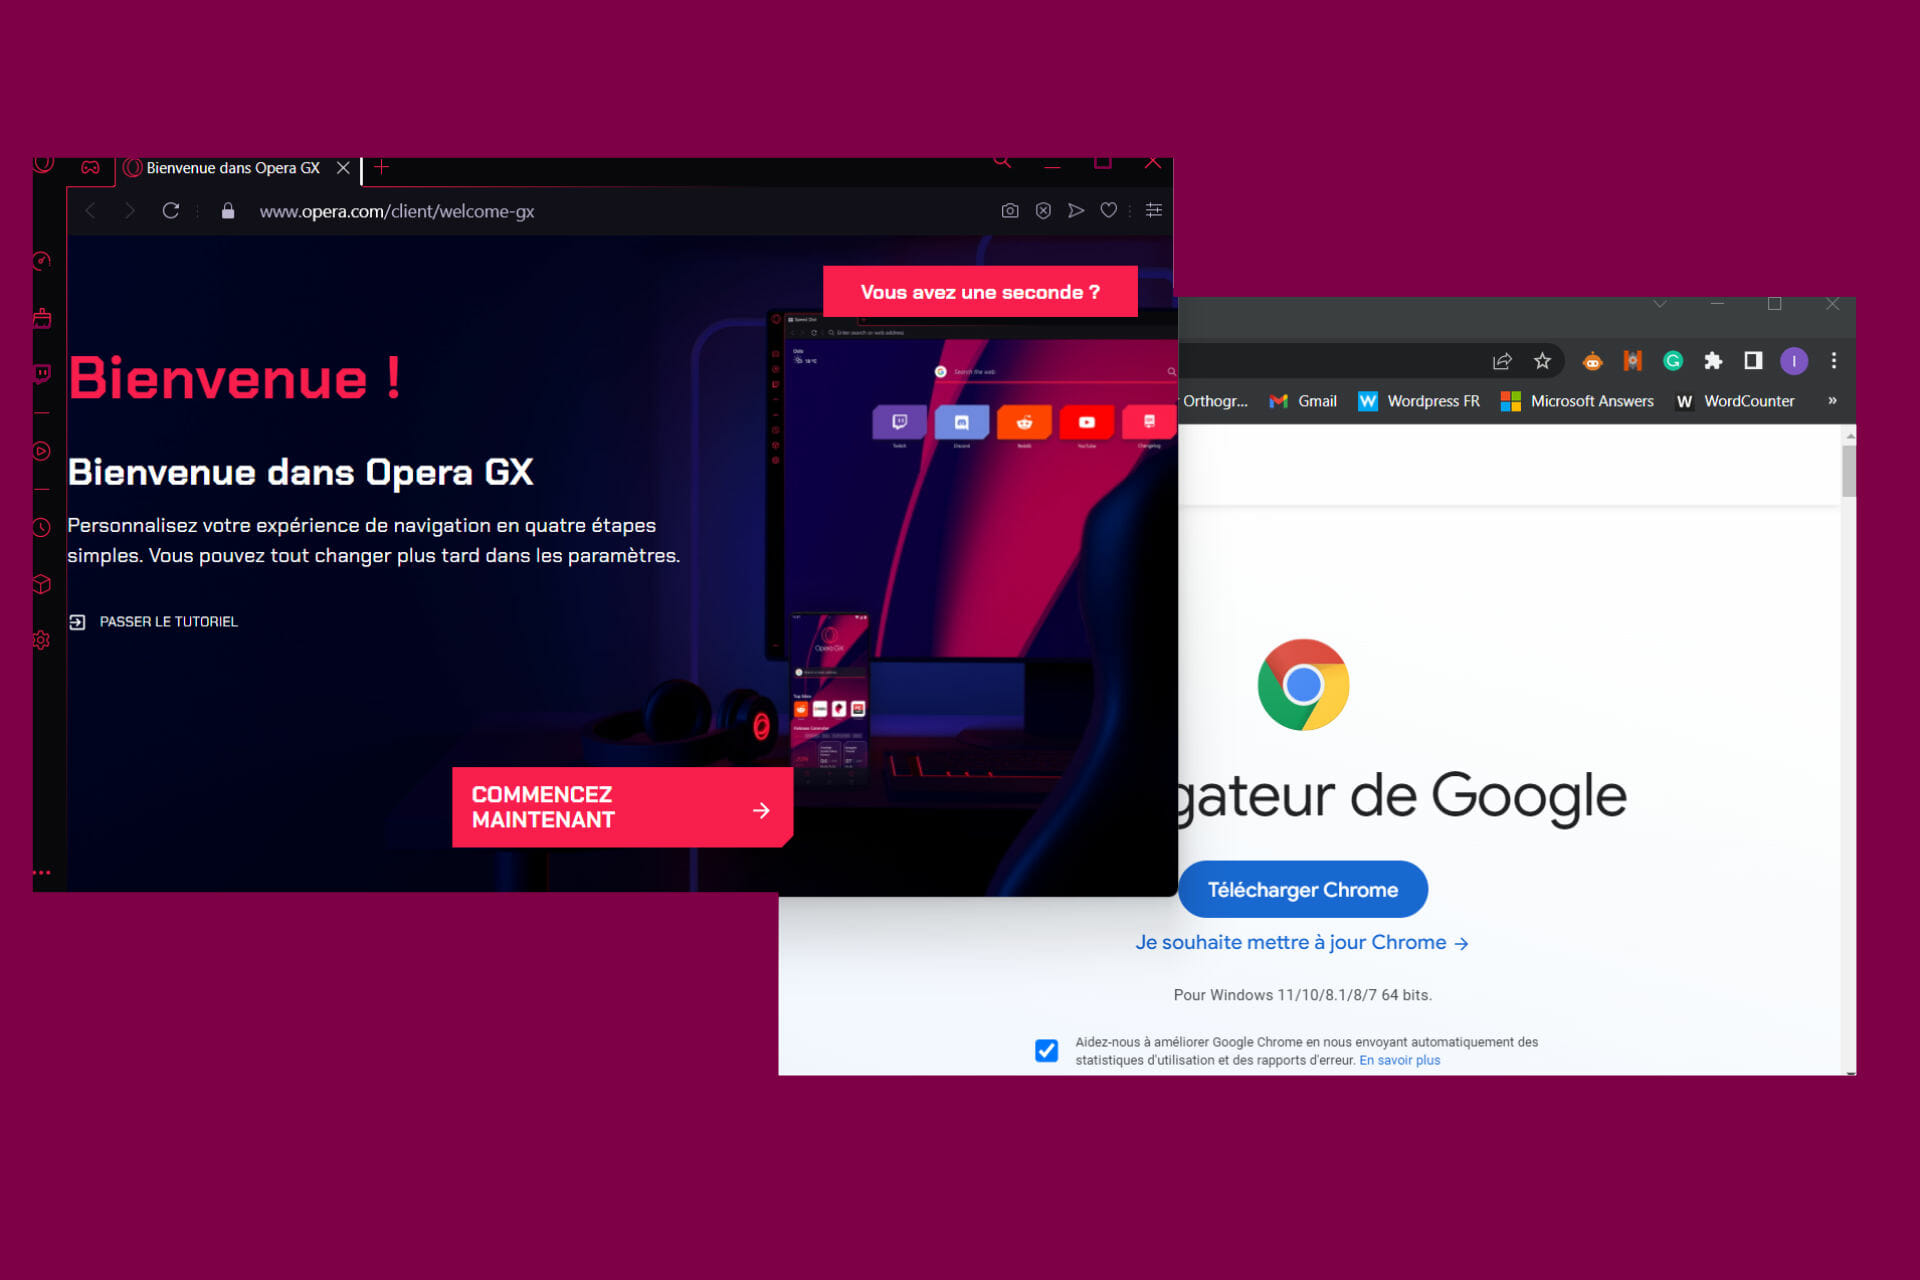 Google ou Opera GX - Quel est le meilleur navigateur pour les jeux